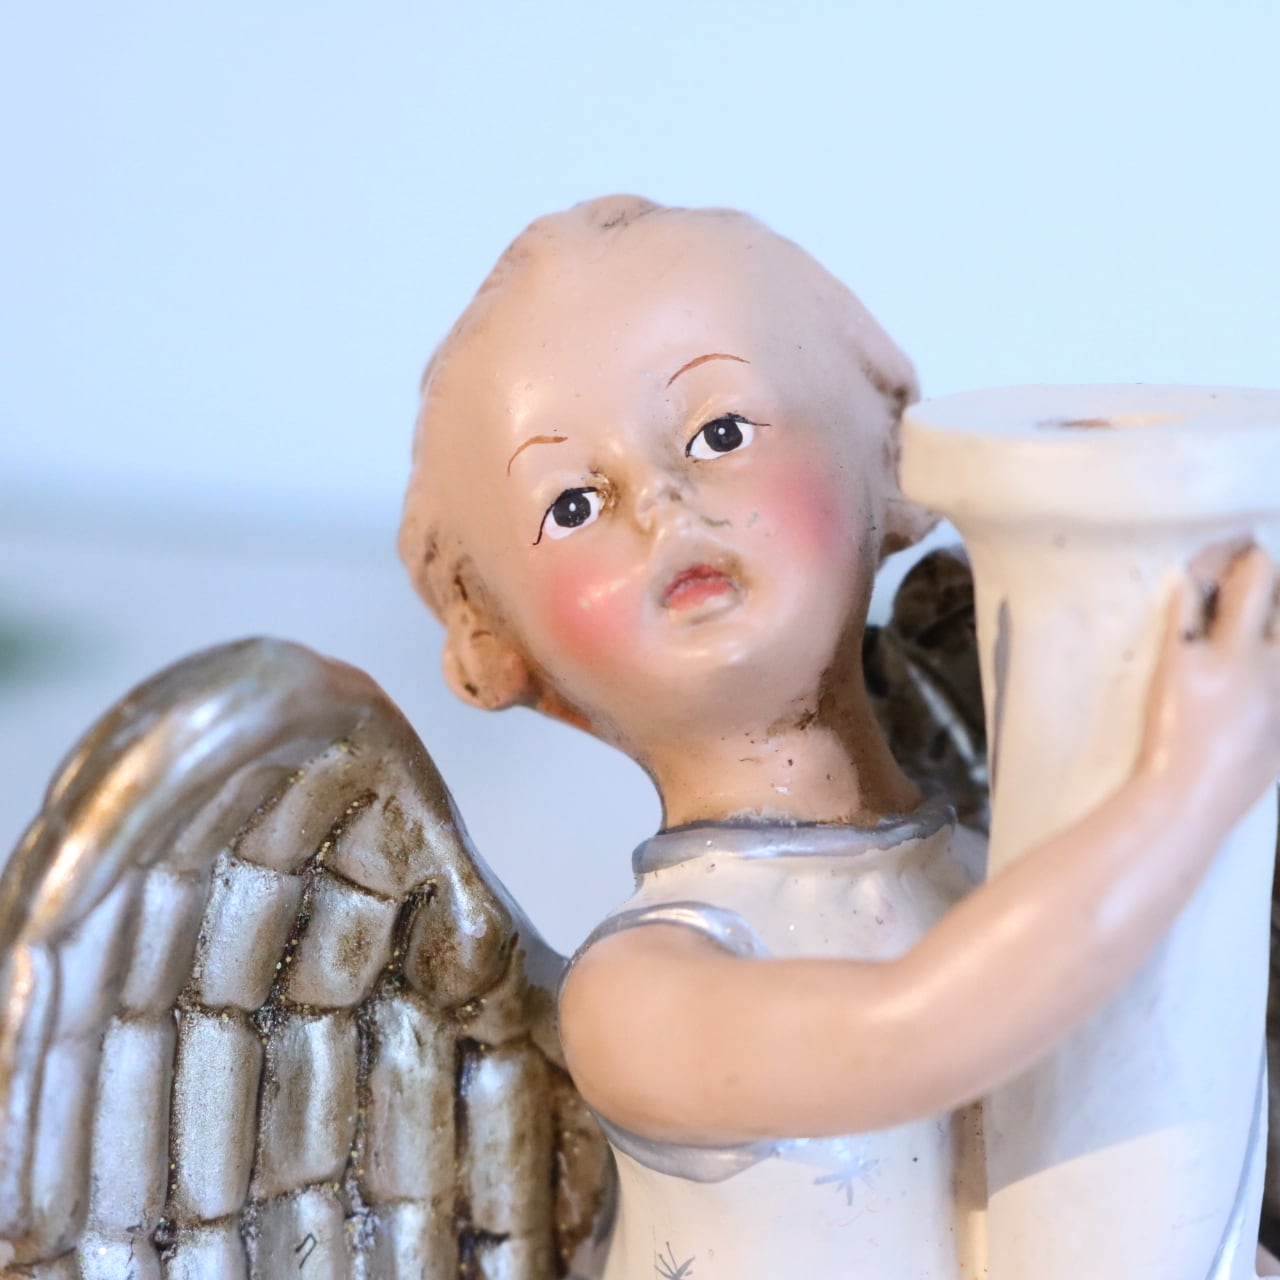 【ZA2211-U47】天使の像 陶器製 ブロンドの天使 エンジェル